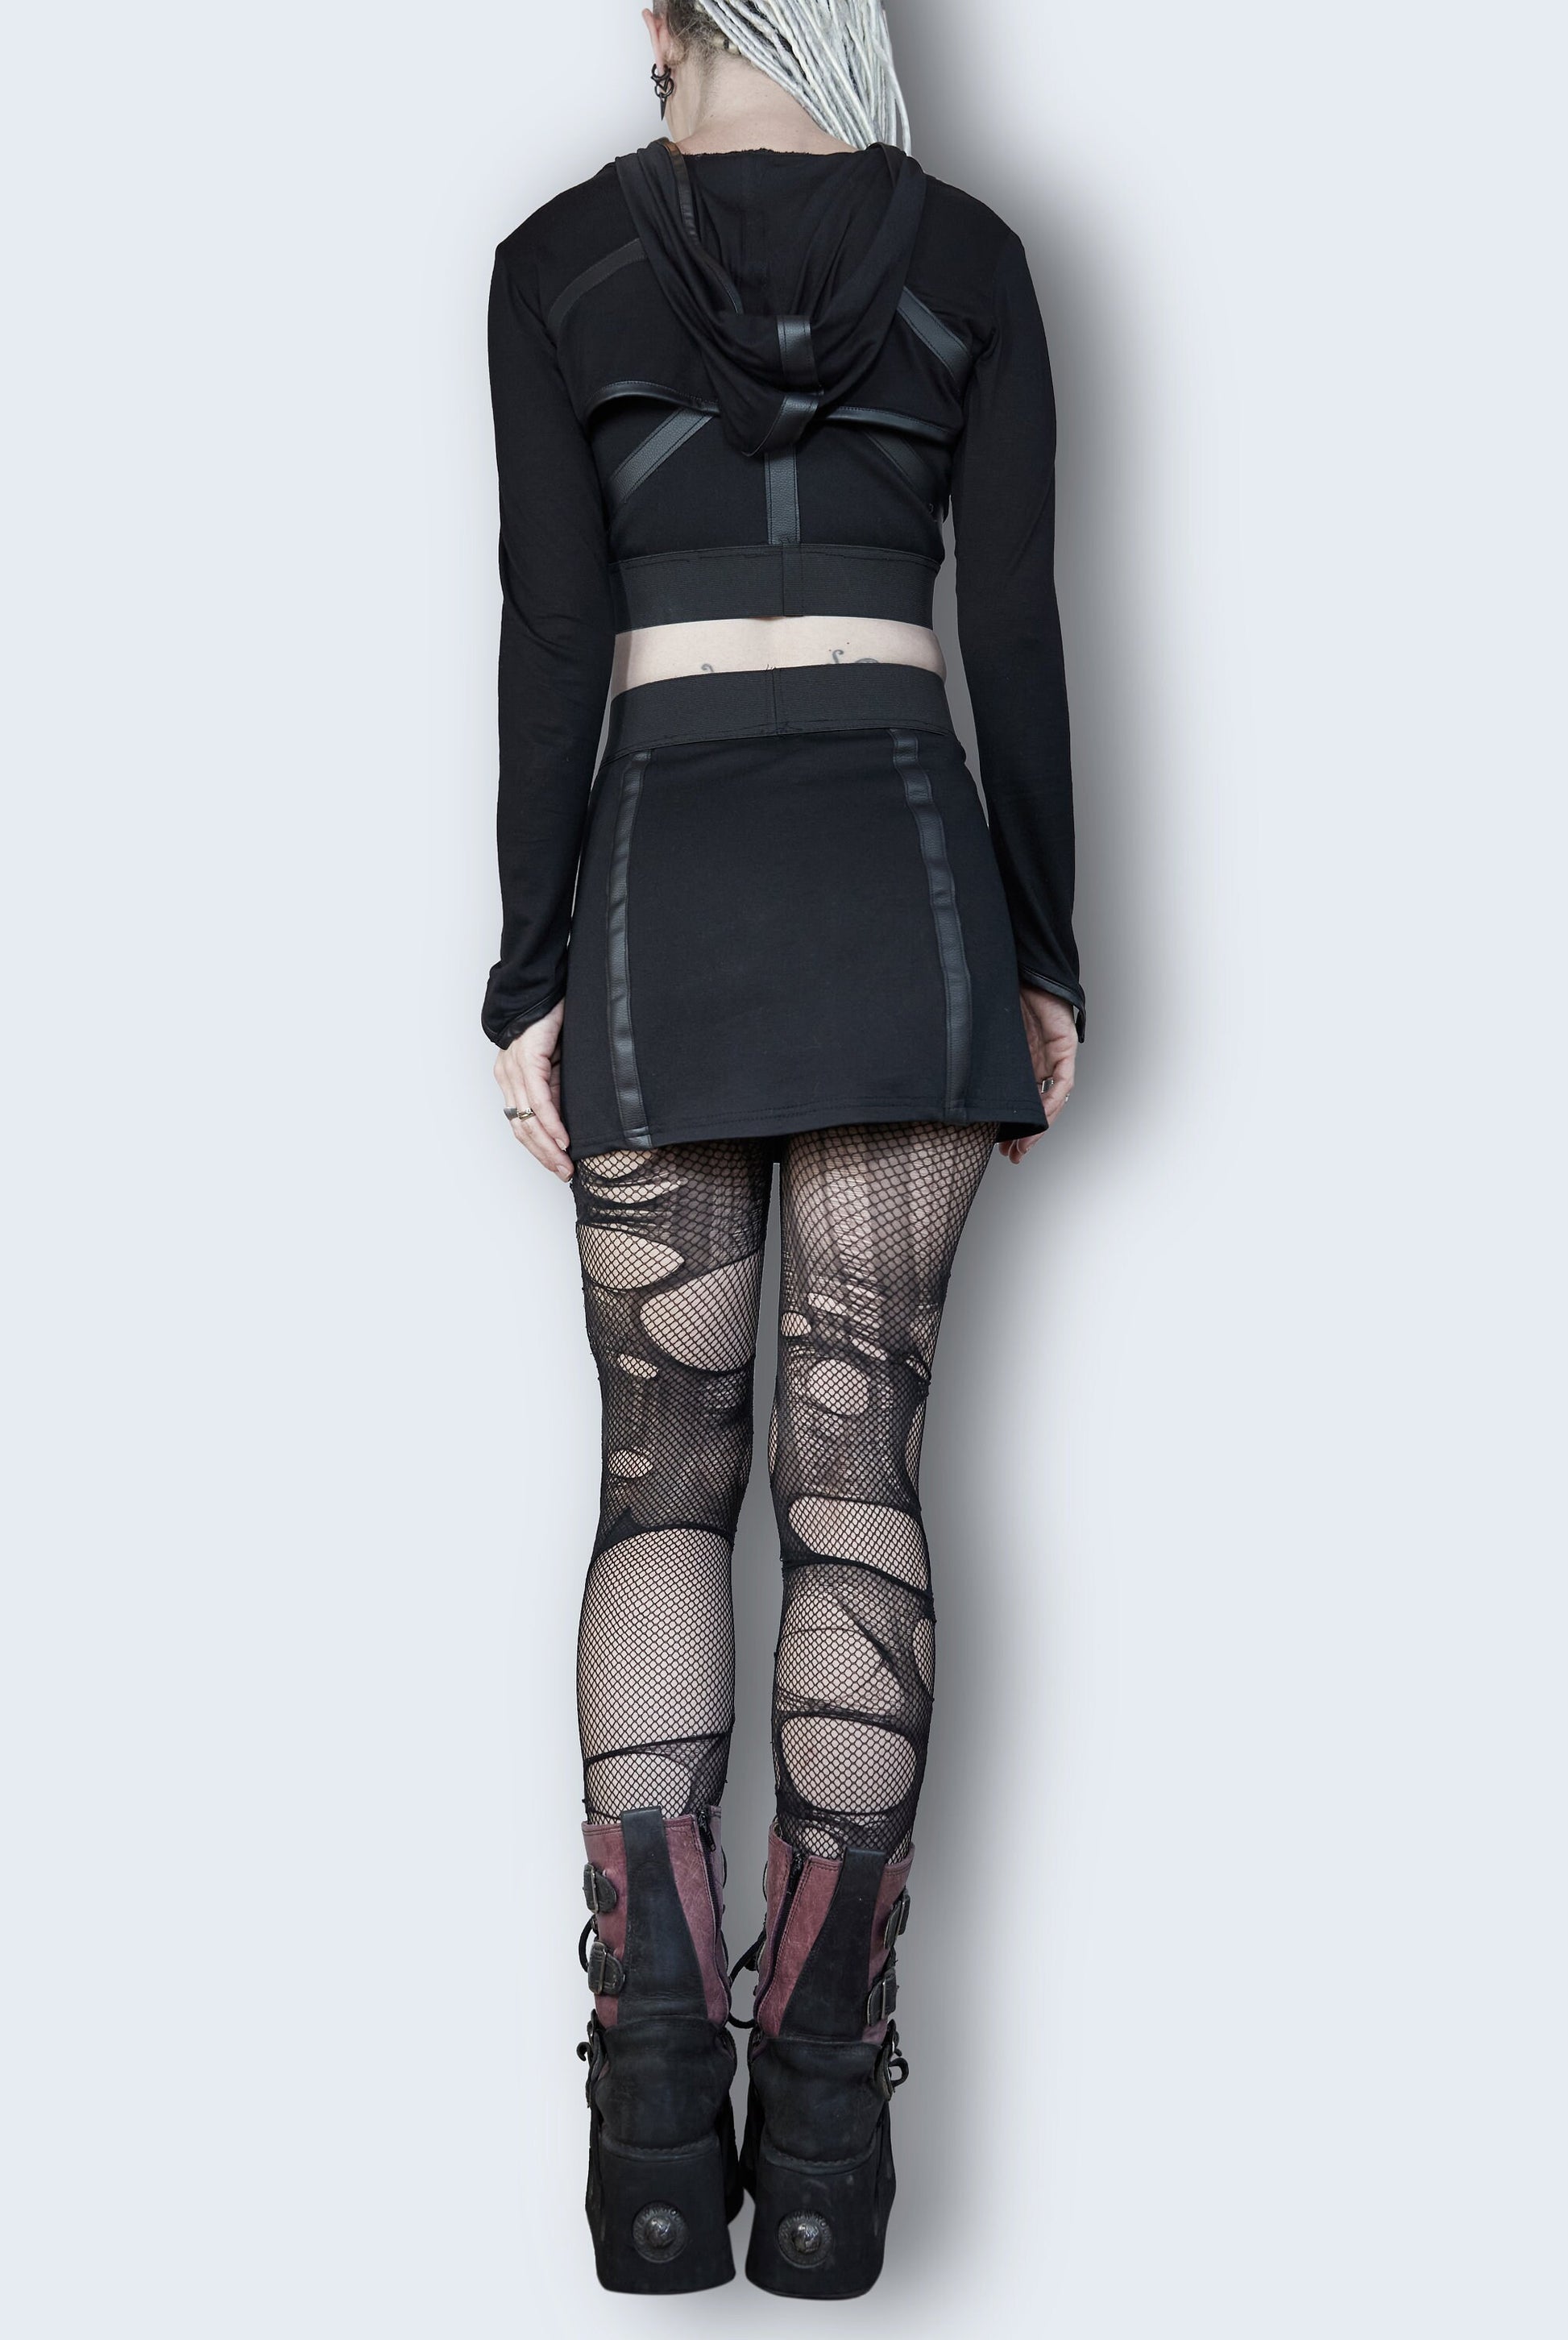 Vegan leather skirt strappy skirt garter skirt gothic mini skirt | alt skirt black mini skirt leather mini skirt gothic skirt